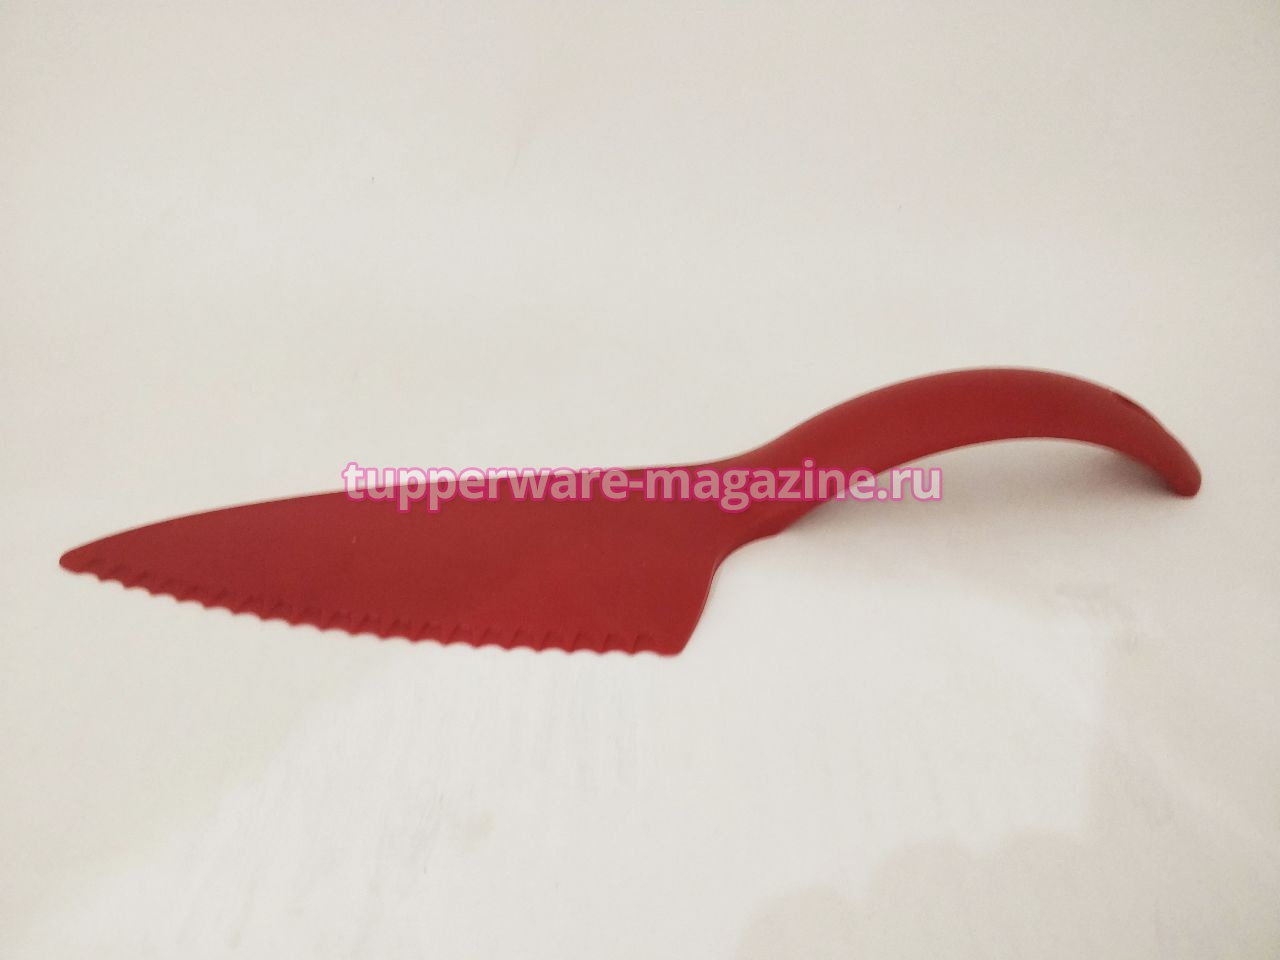 Сервировочная лопатка в красном цвете